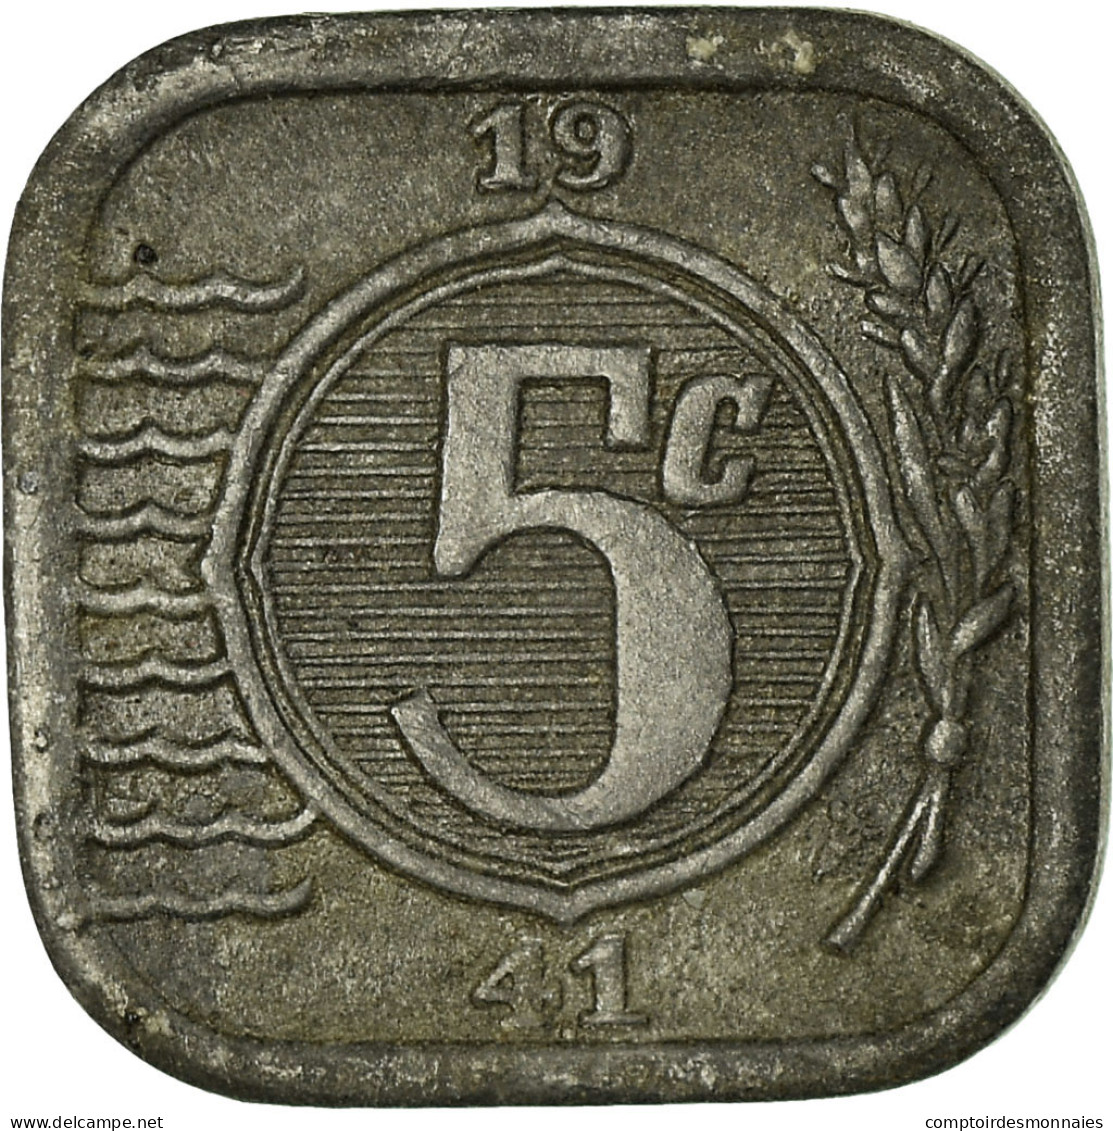 Monnaie, Pays-Bas, Wilhelmina I, 5 Cents, 1941, TB, Zinc, KM:172 - 5 Centavos